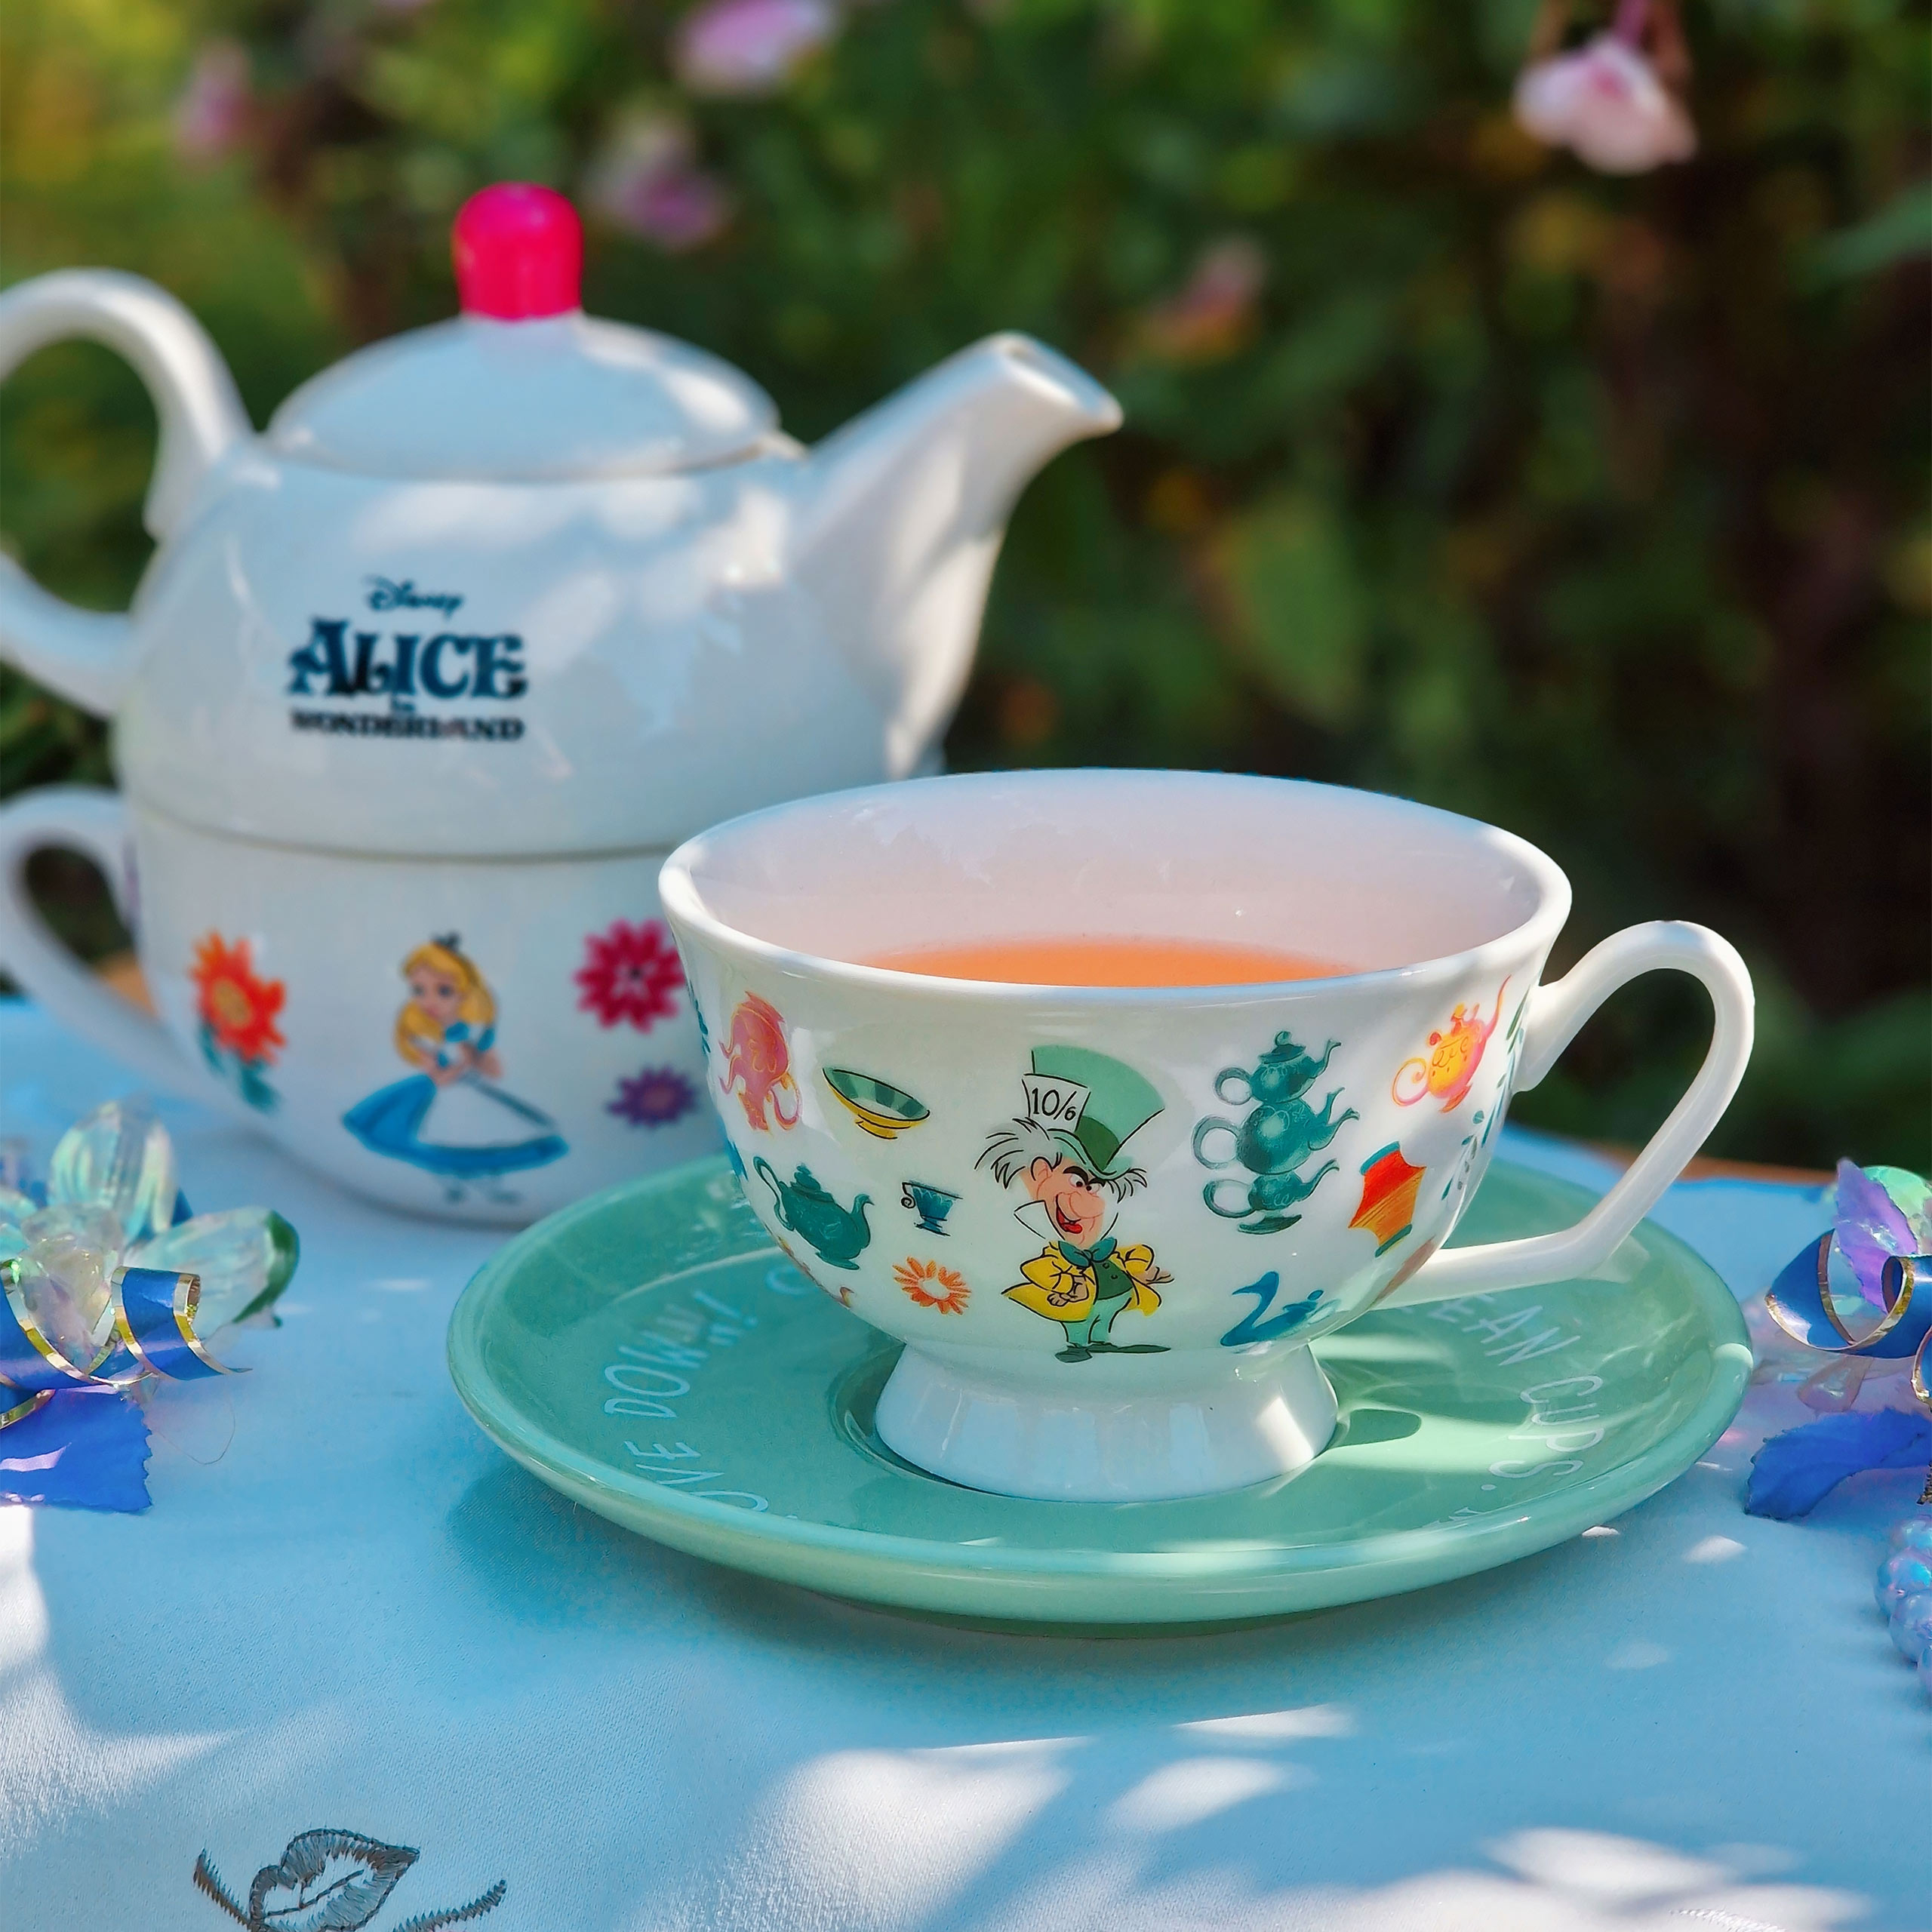 Alice im Wunderland - Hutmacher Tasse mit Teller